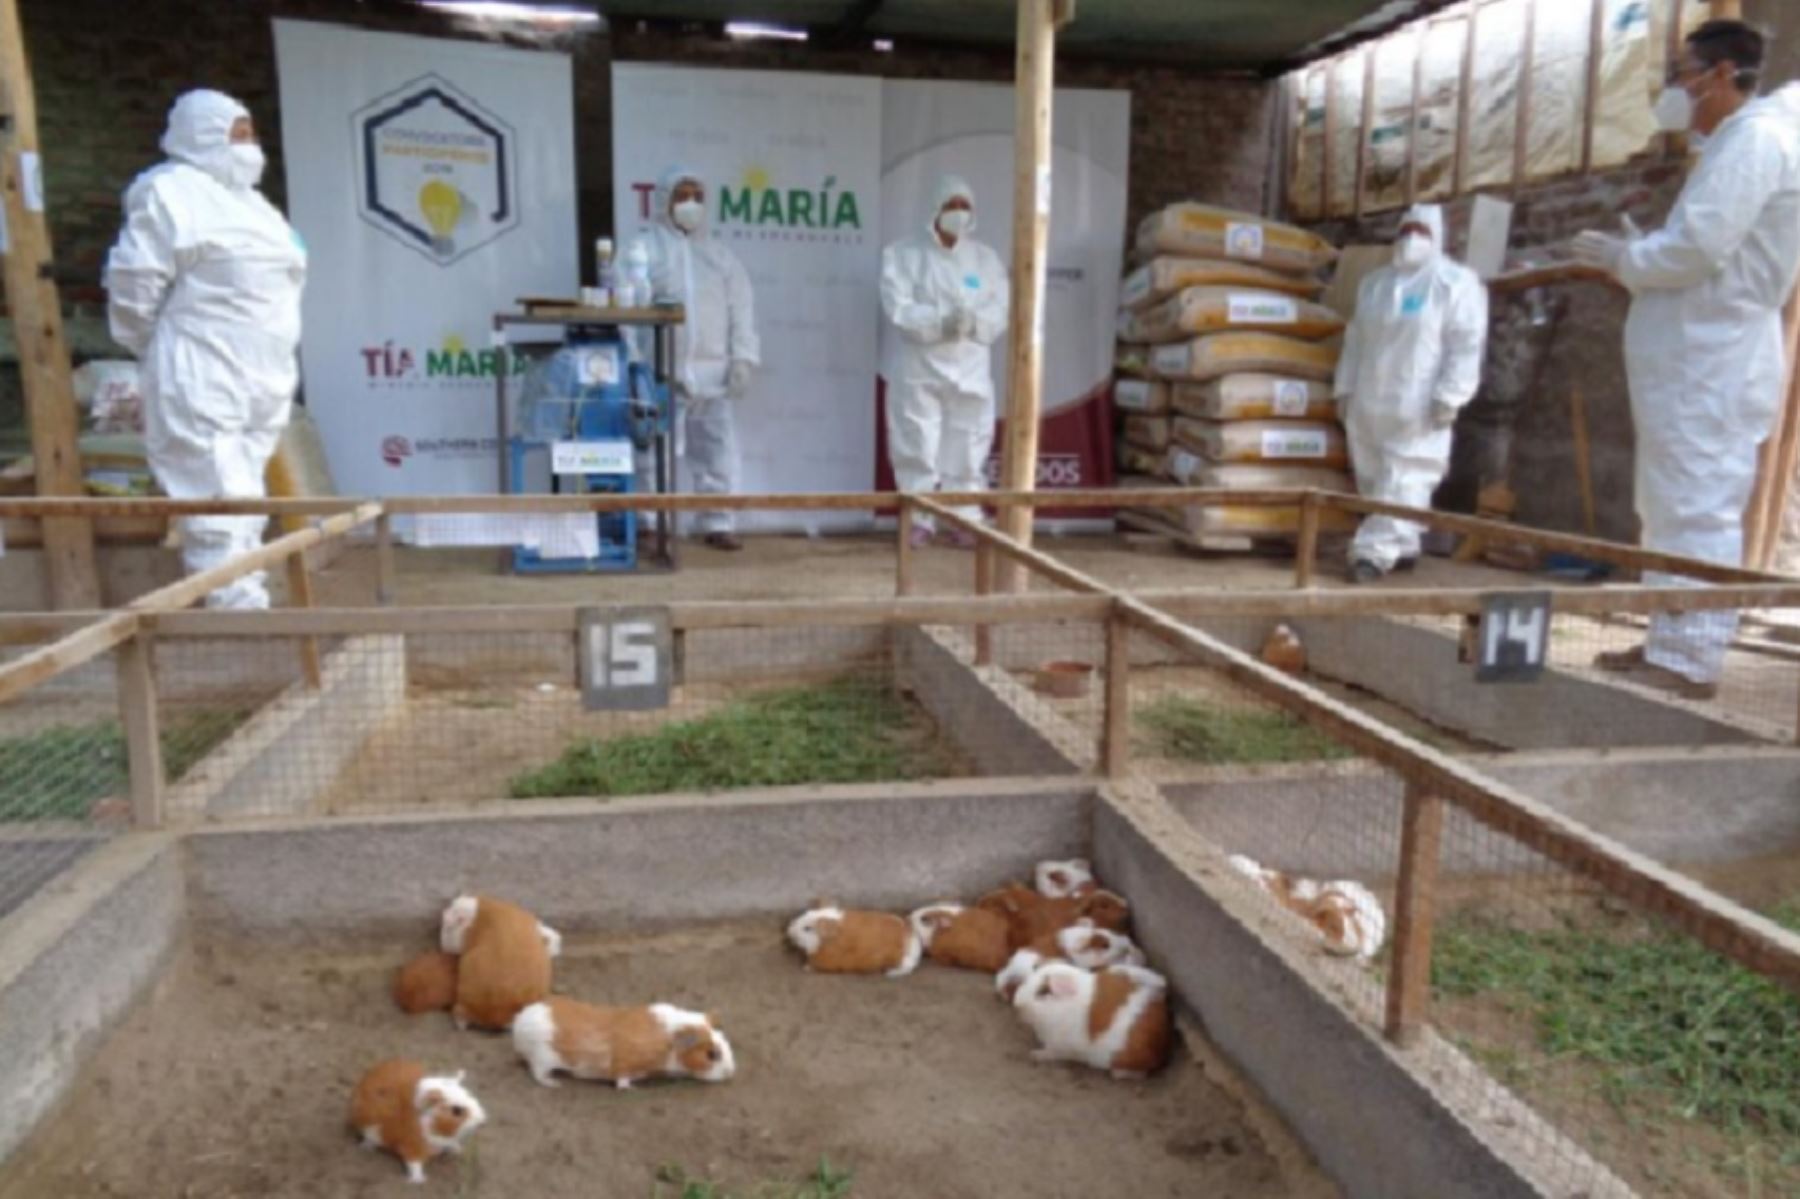 Son 24 productores de cuyes de la localidad de Valle Arriba, en el distrito de Cocachacra, quienes recibirán asistencia técnica innovadora para el mejoramiento genético de estos animales de gran demanda en la gastronomía arequipeña.